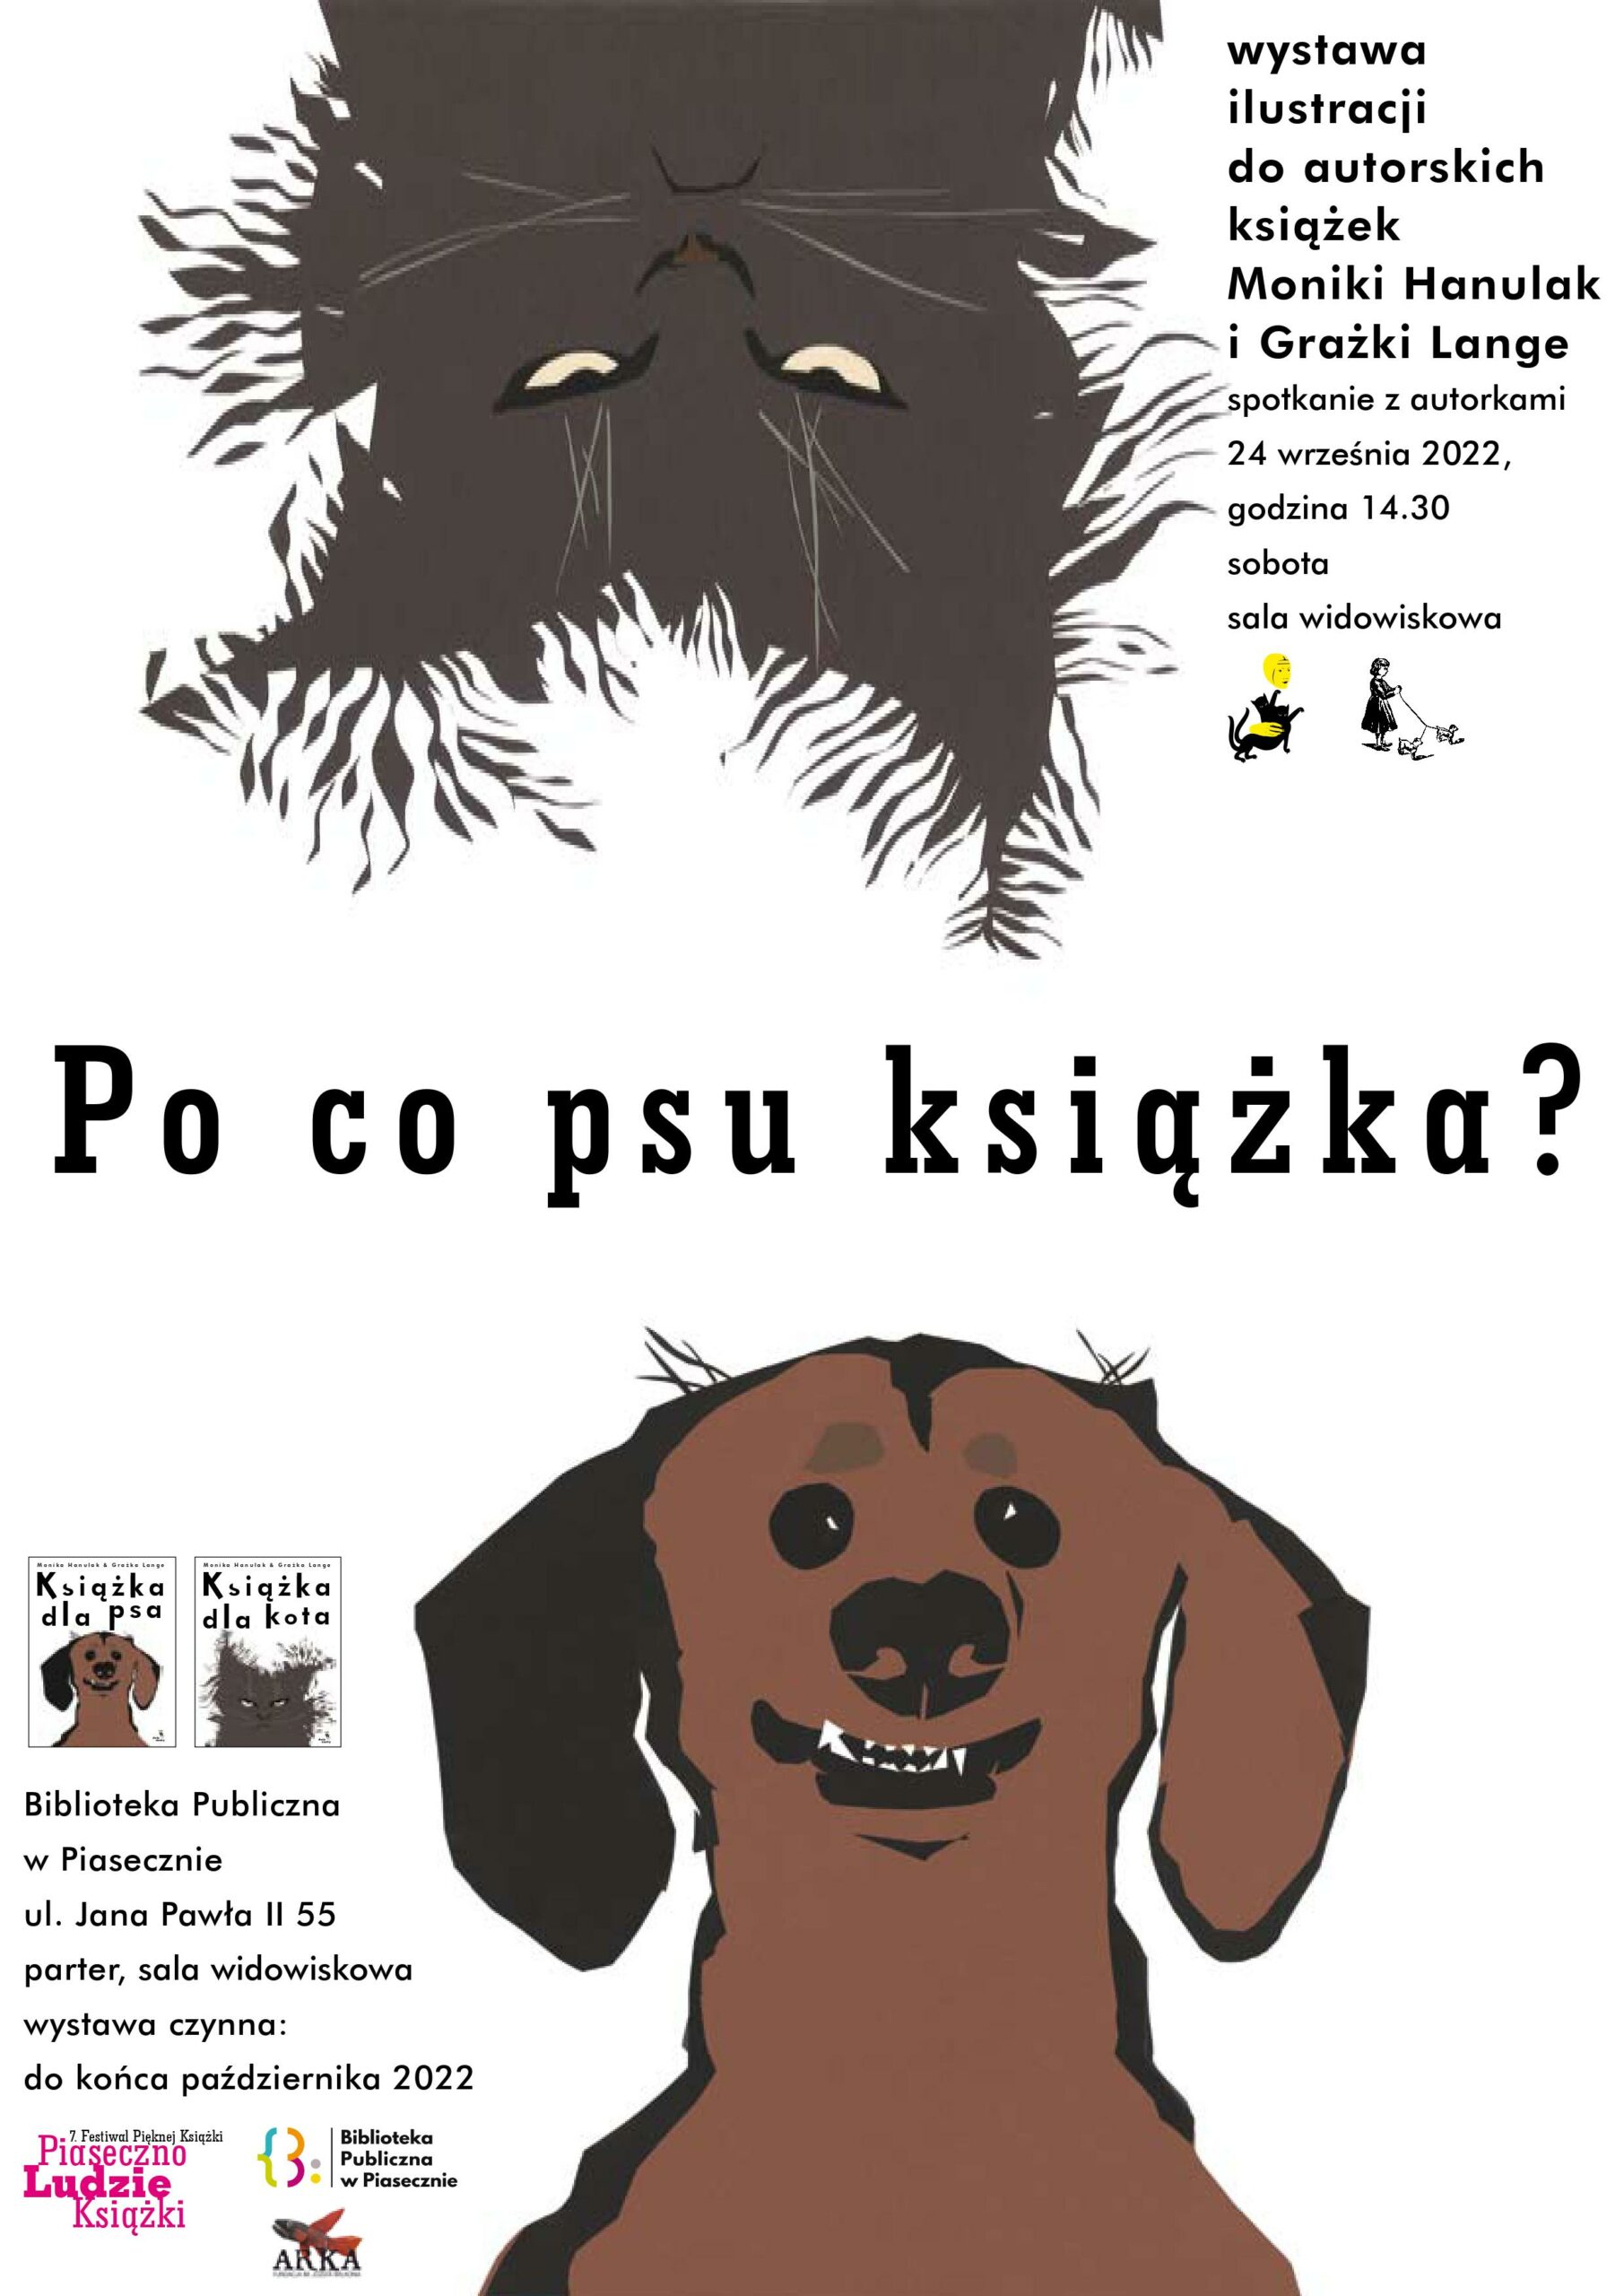 Książka dla psa i kota - plakat zapowiadający spotkanie przedstawia grafiki z wizerunkami kota i psa